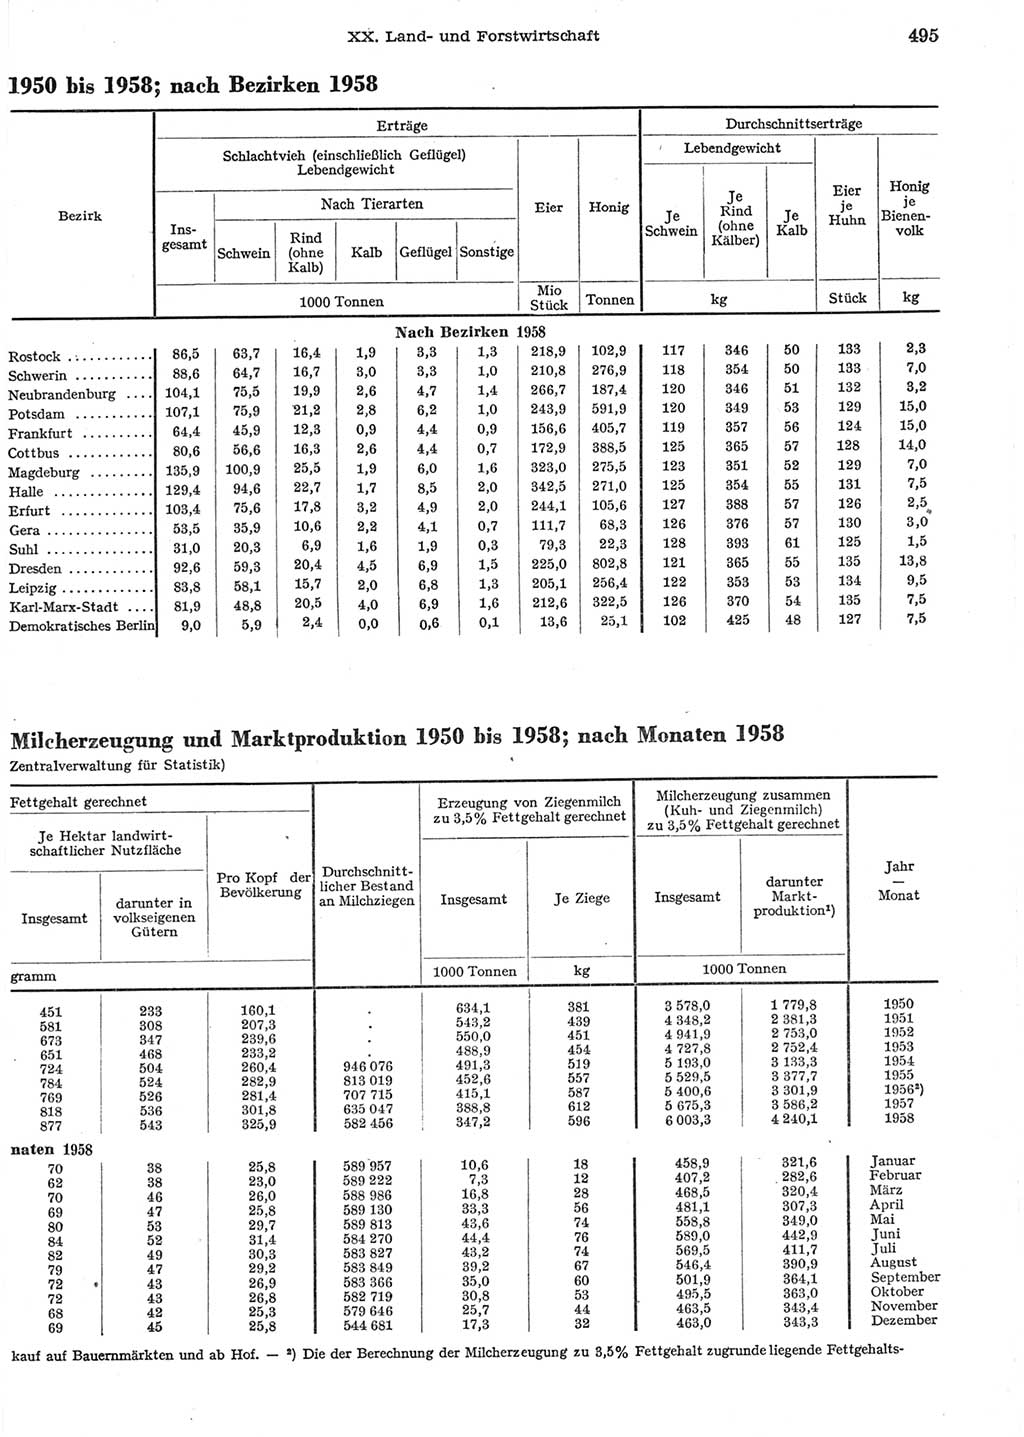 Statistisches Jahrbuch der Deutschen Demokratischen Republik (DDR) 1958, Seite 495 (Stat. Jb. DDR 1958, S. 495)